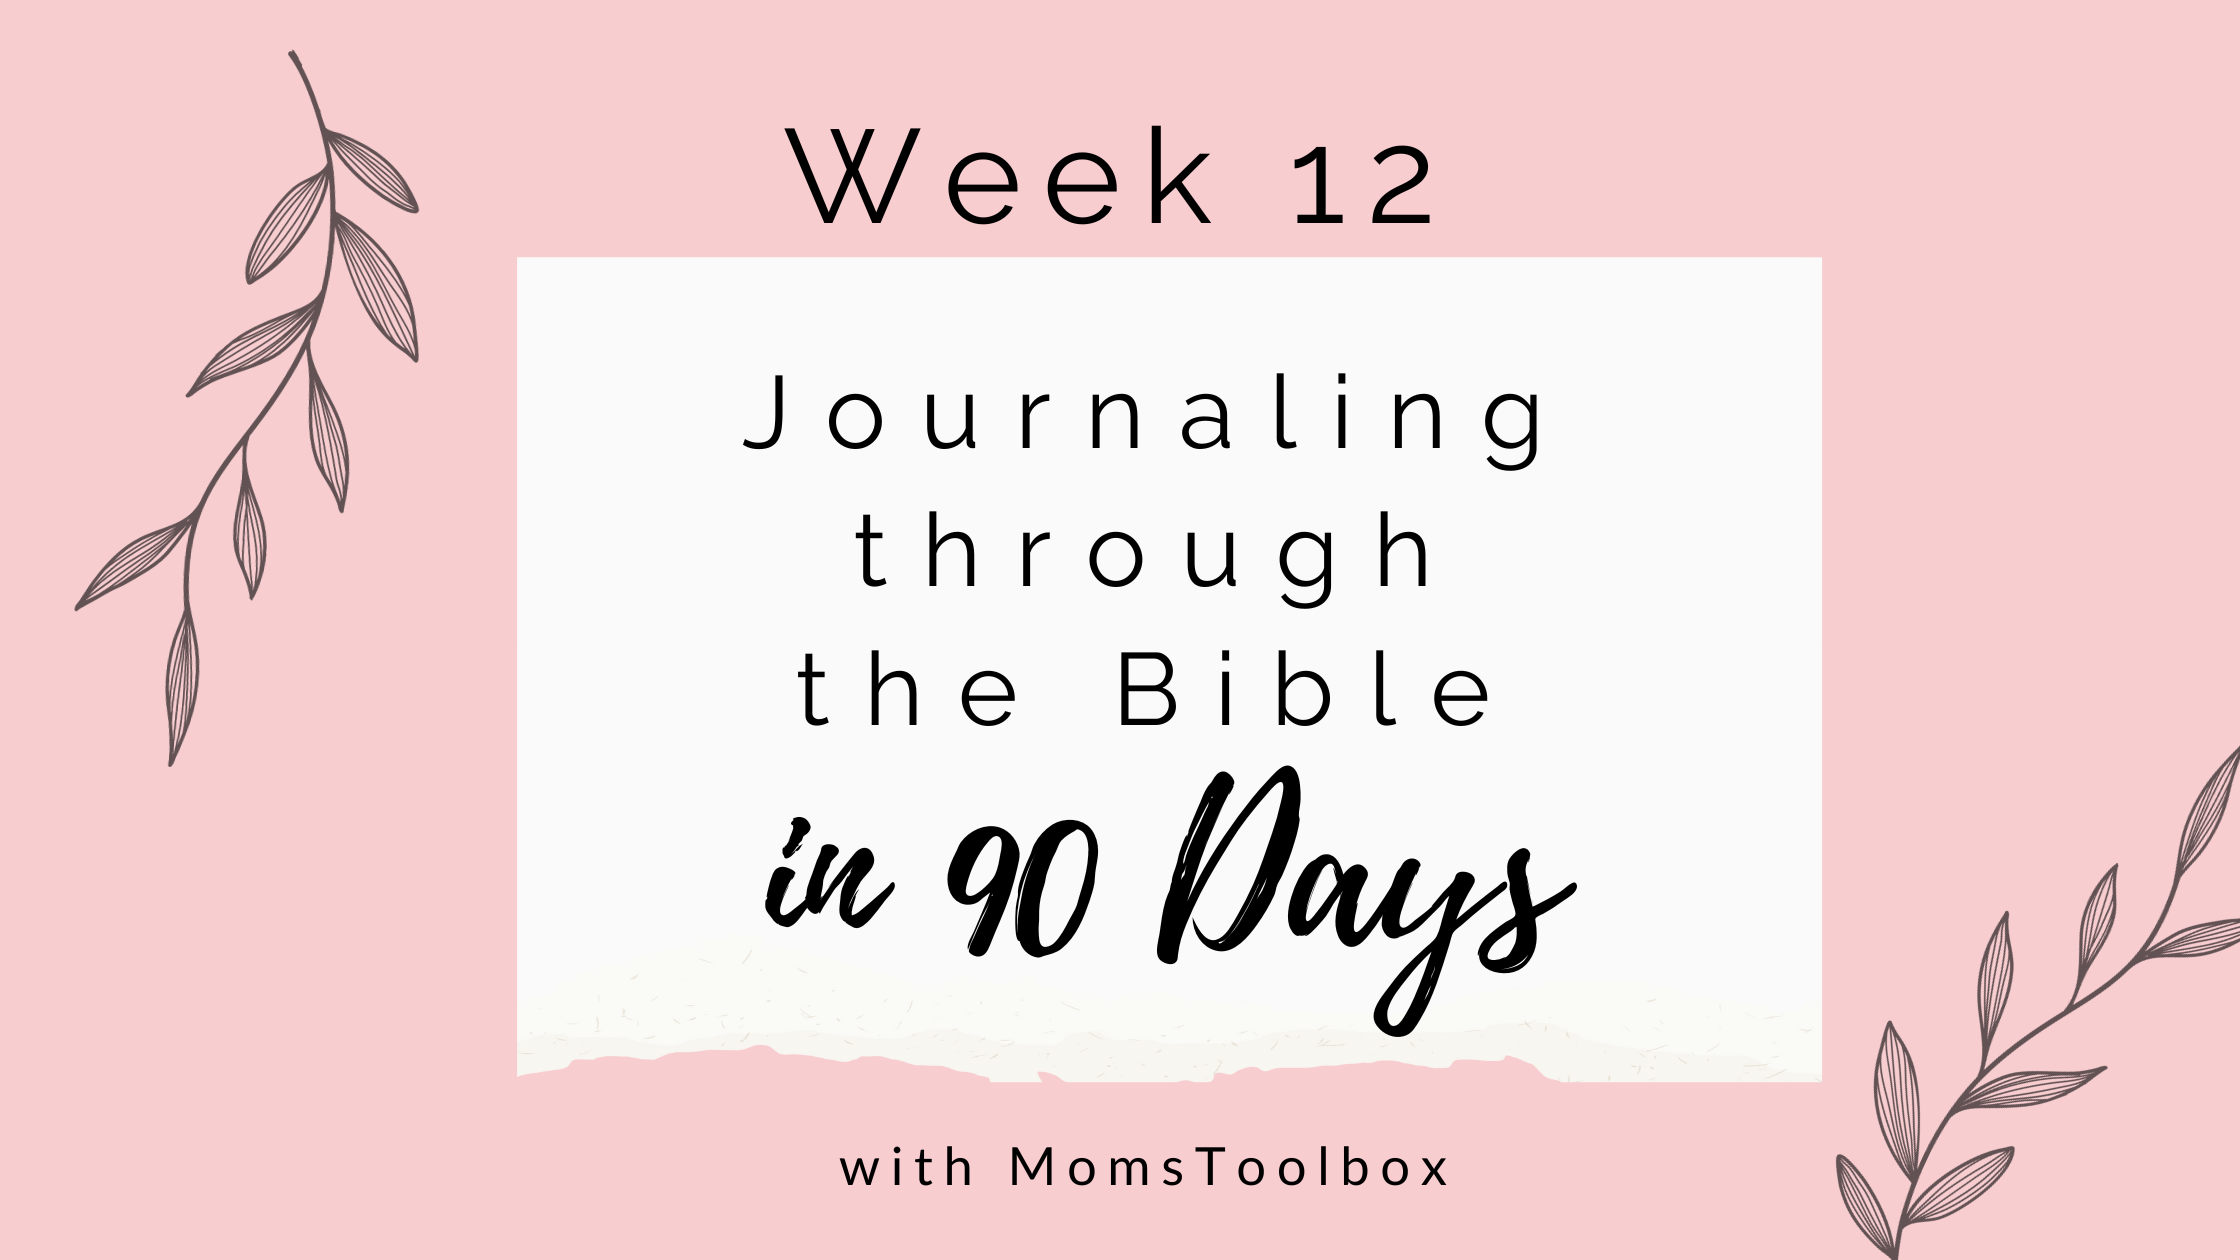 Journaling through the Bible in 90 days: Week 12!